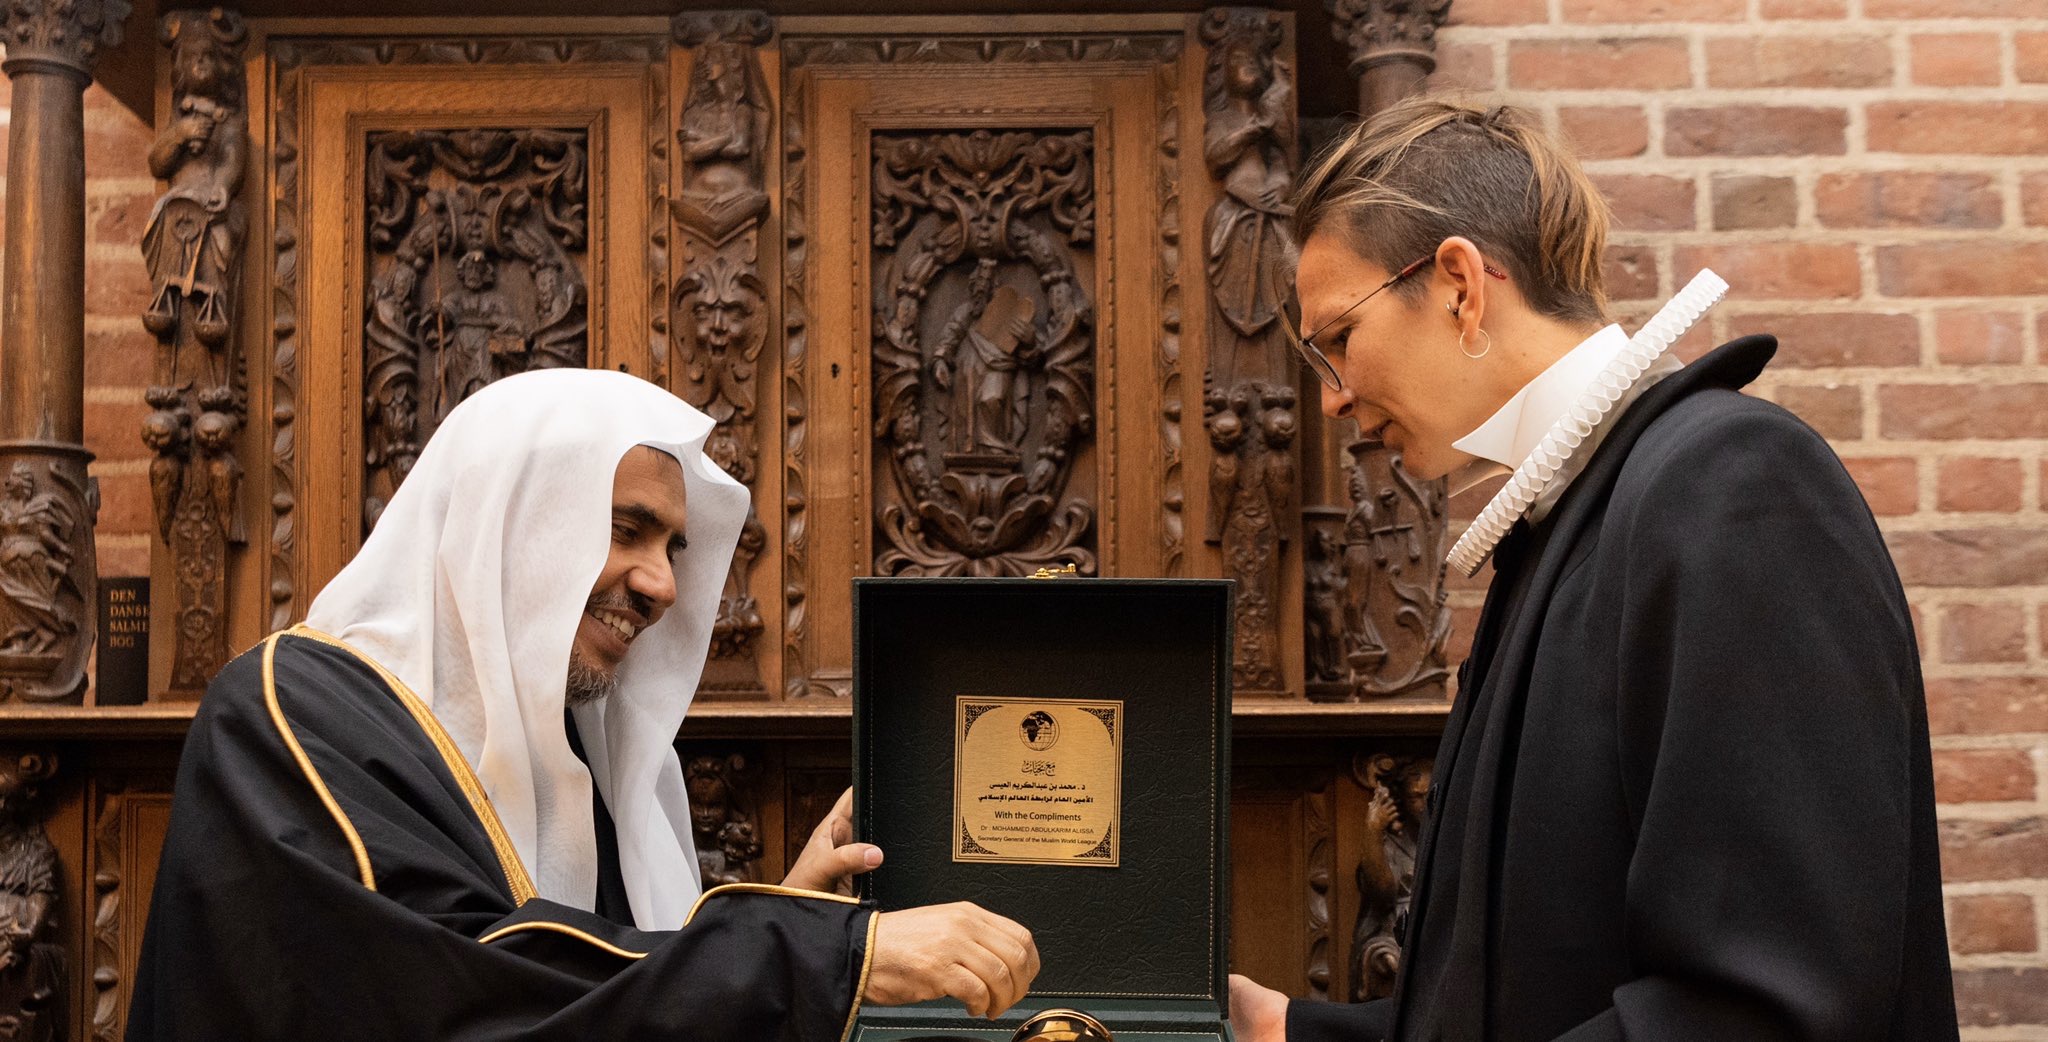 Le D.Mohammad Alissa durant une remise de cadeau à la responsable de la cathédrale Roskilde, qui est officiellement celle de la famille royale danoise dans le cadre des relations de l’entraide entre les adeptes des religions des cultures basées sur les dénominateurs communs.